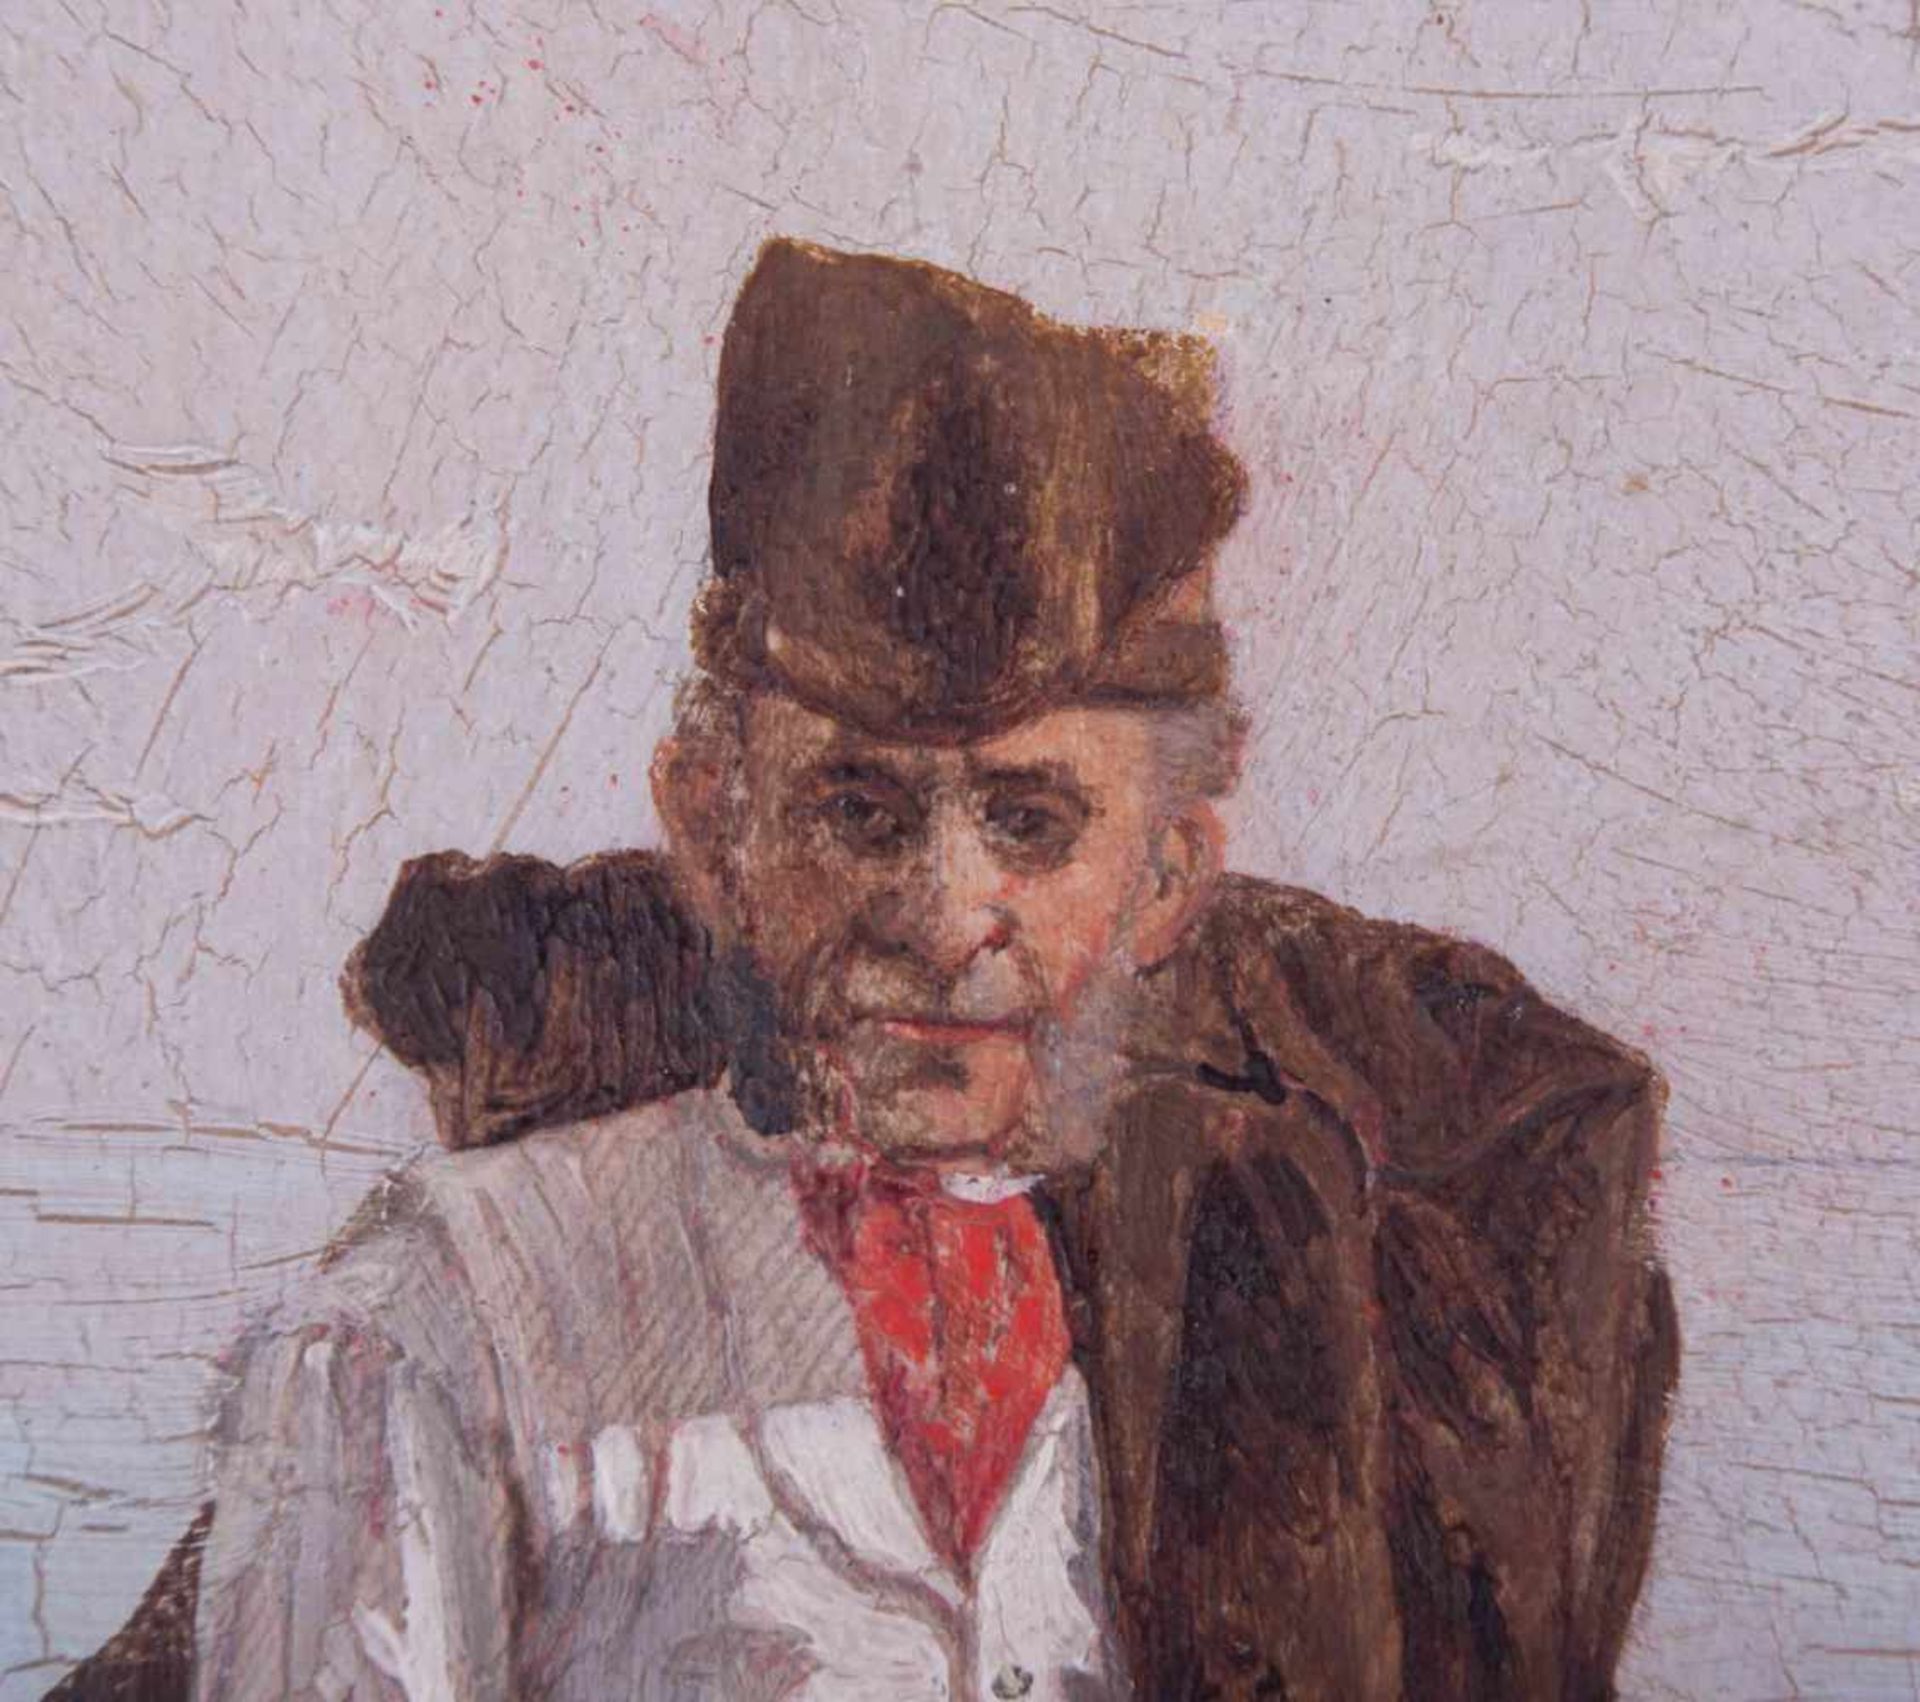 anonymer Künstler des 19./20. Jhd. wohl Italien "Fischer am Strand" Gemälde Öl/ Holz, 28,3 cm x 13,3 - Image 3 of 4